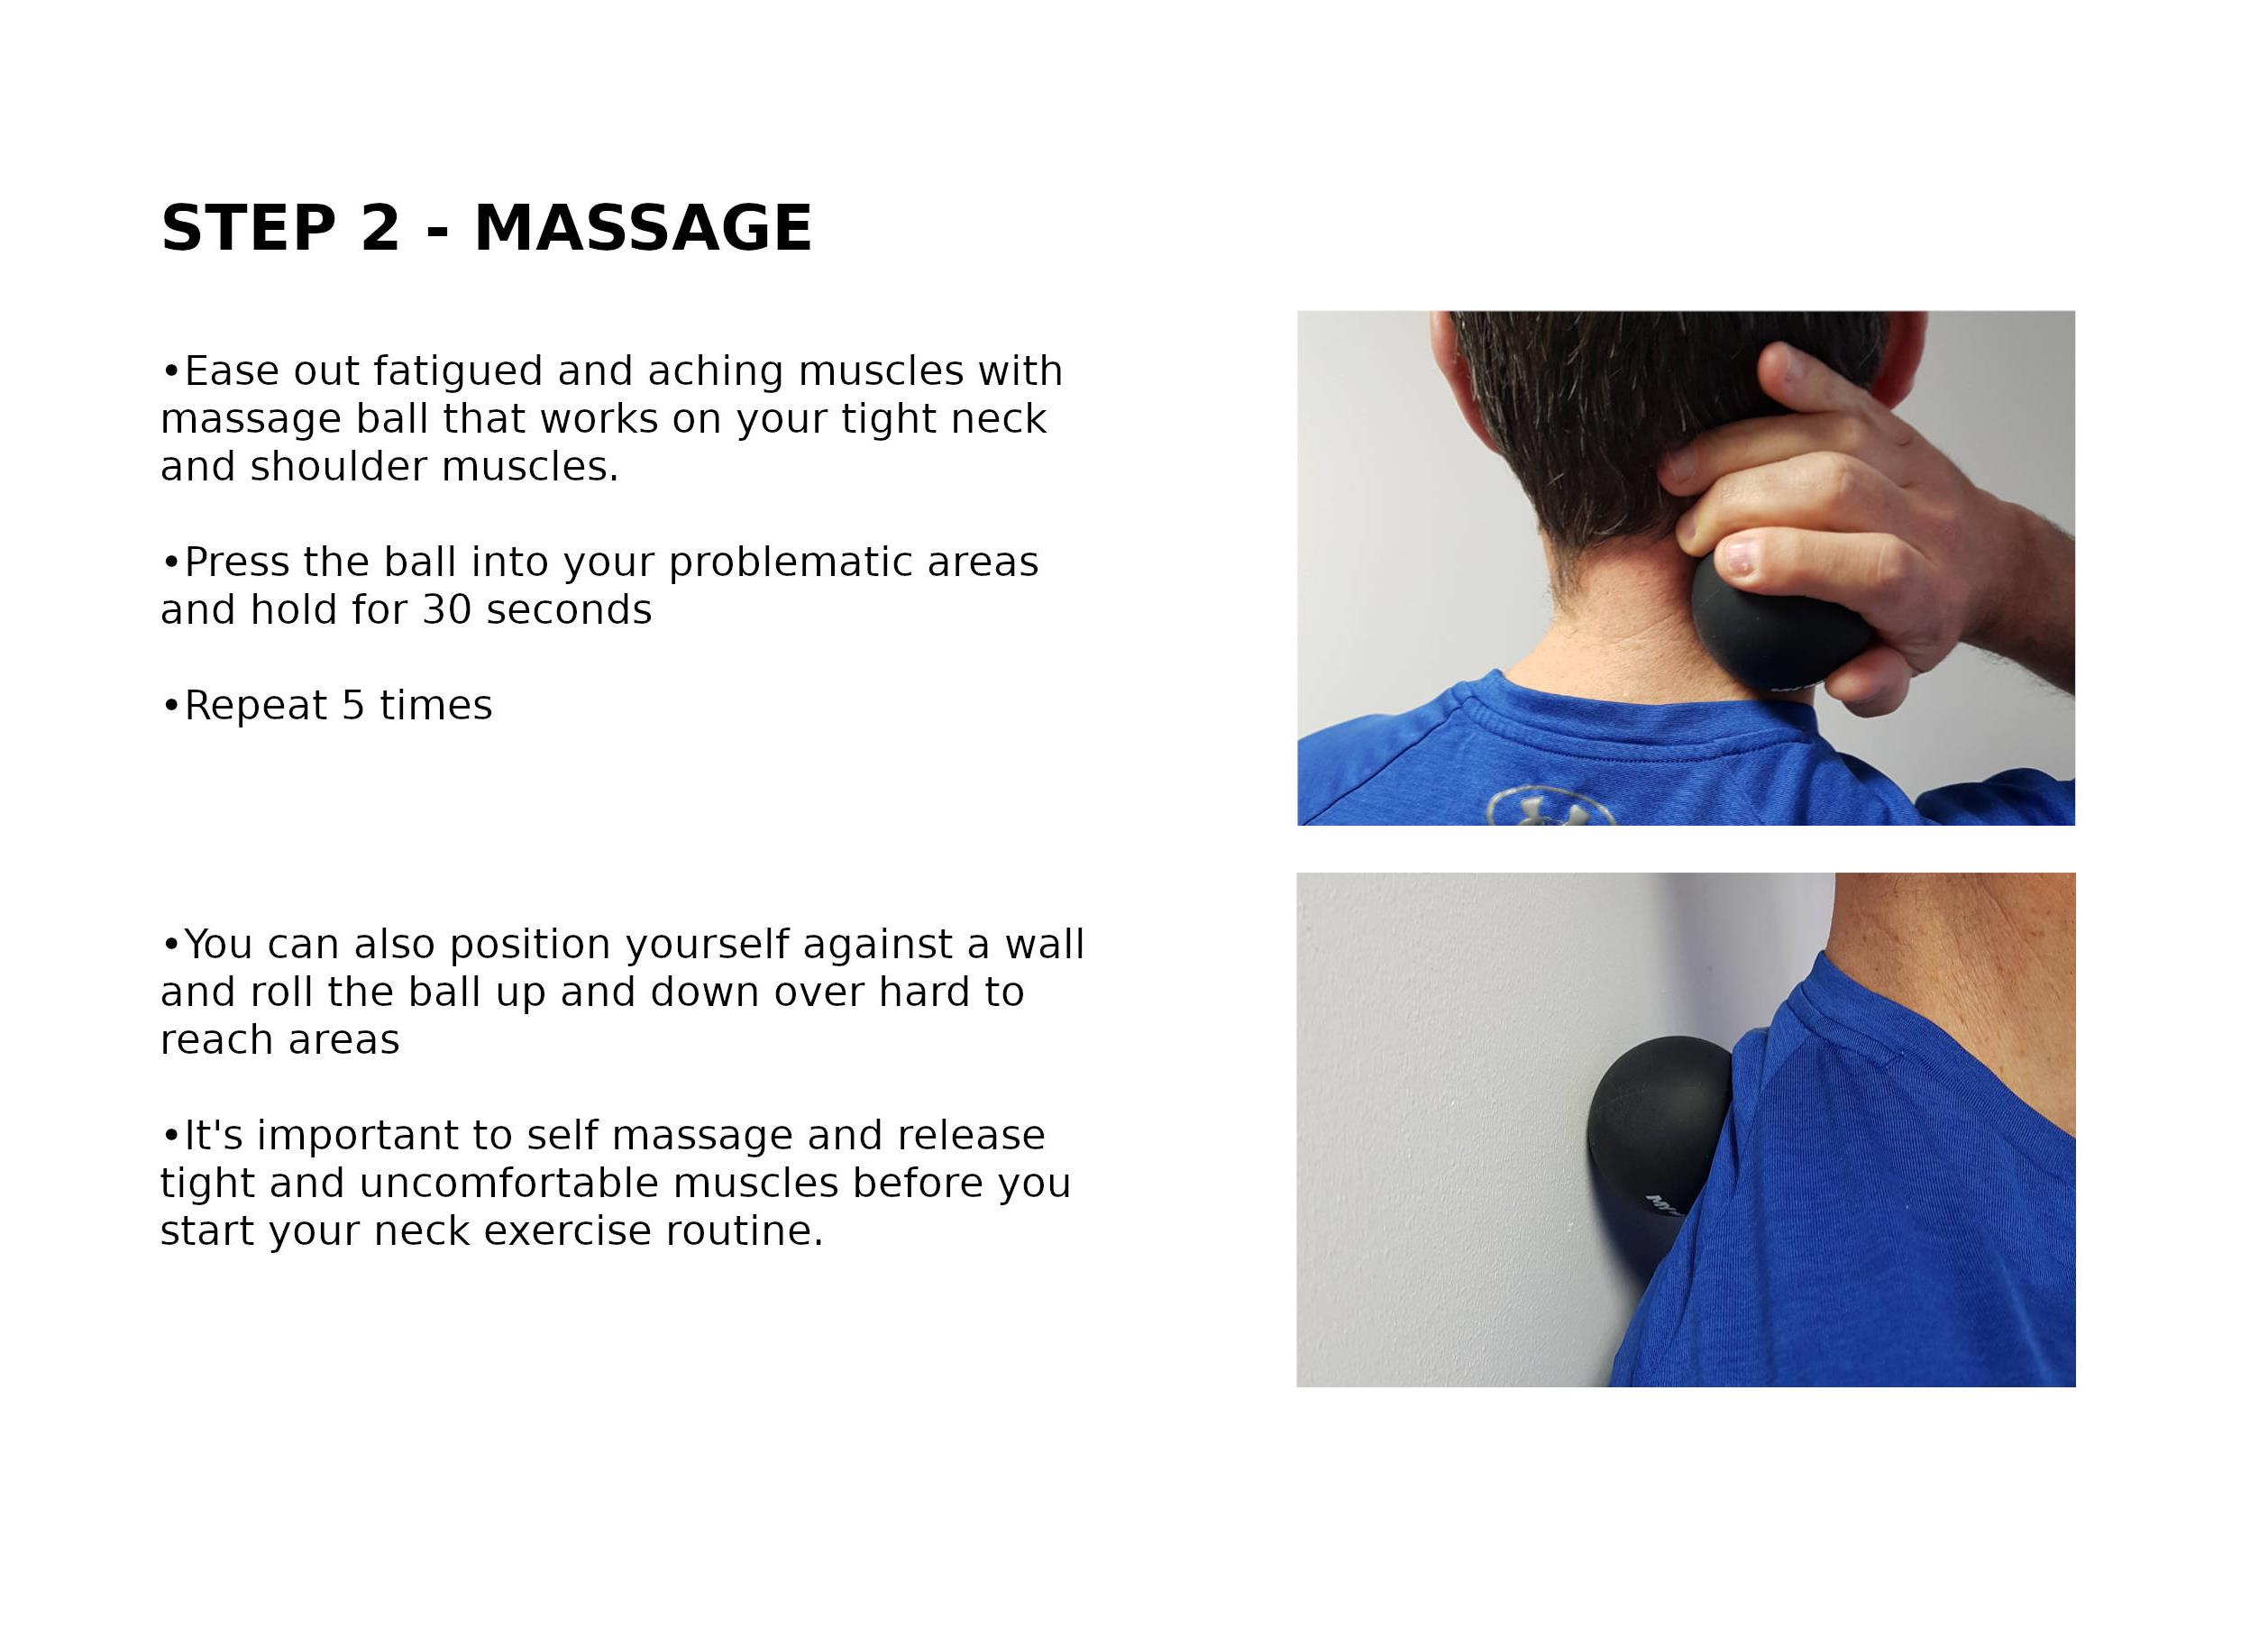 Whiplash Heat Massage Exercises 02